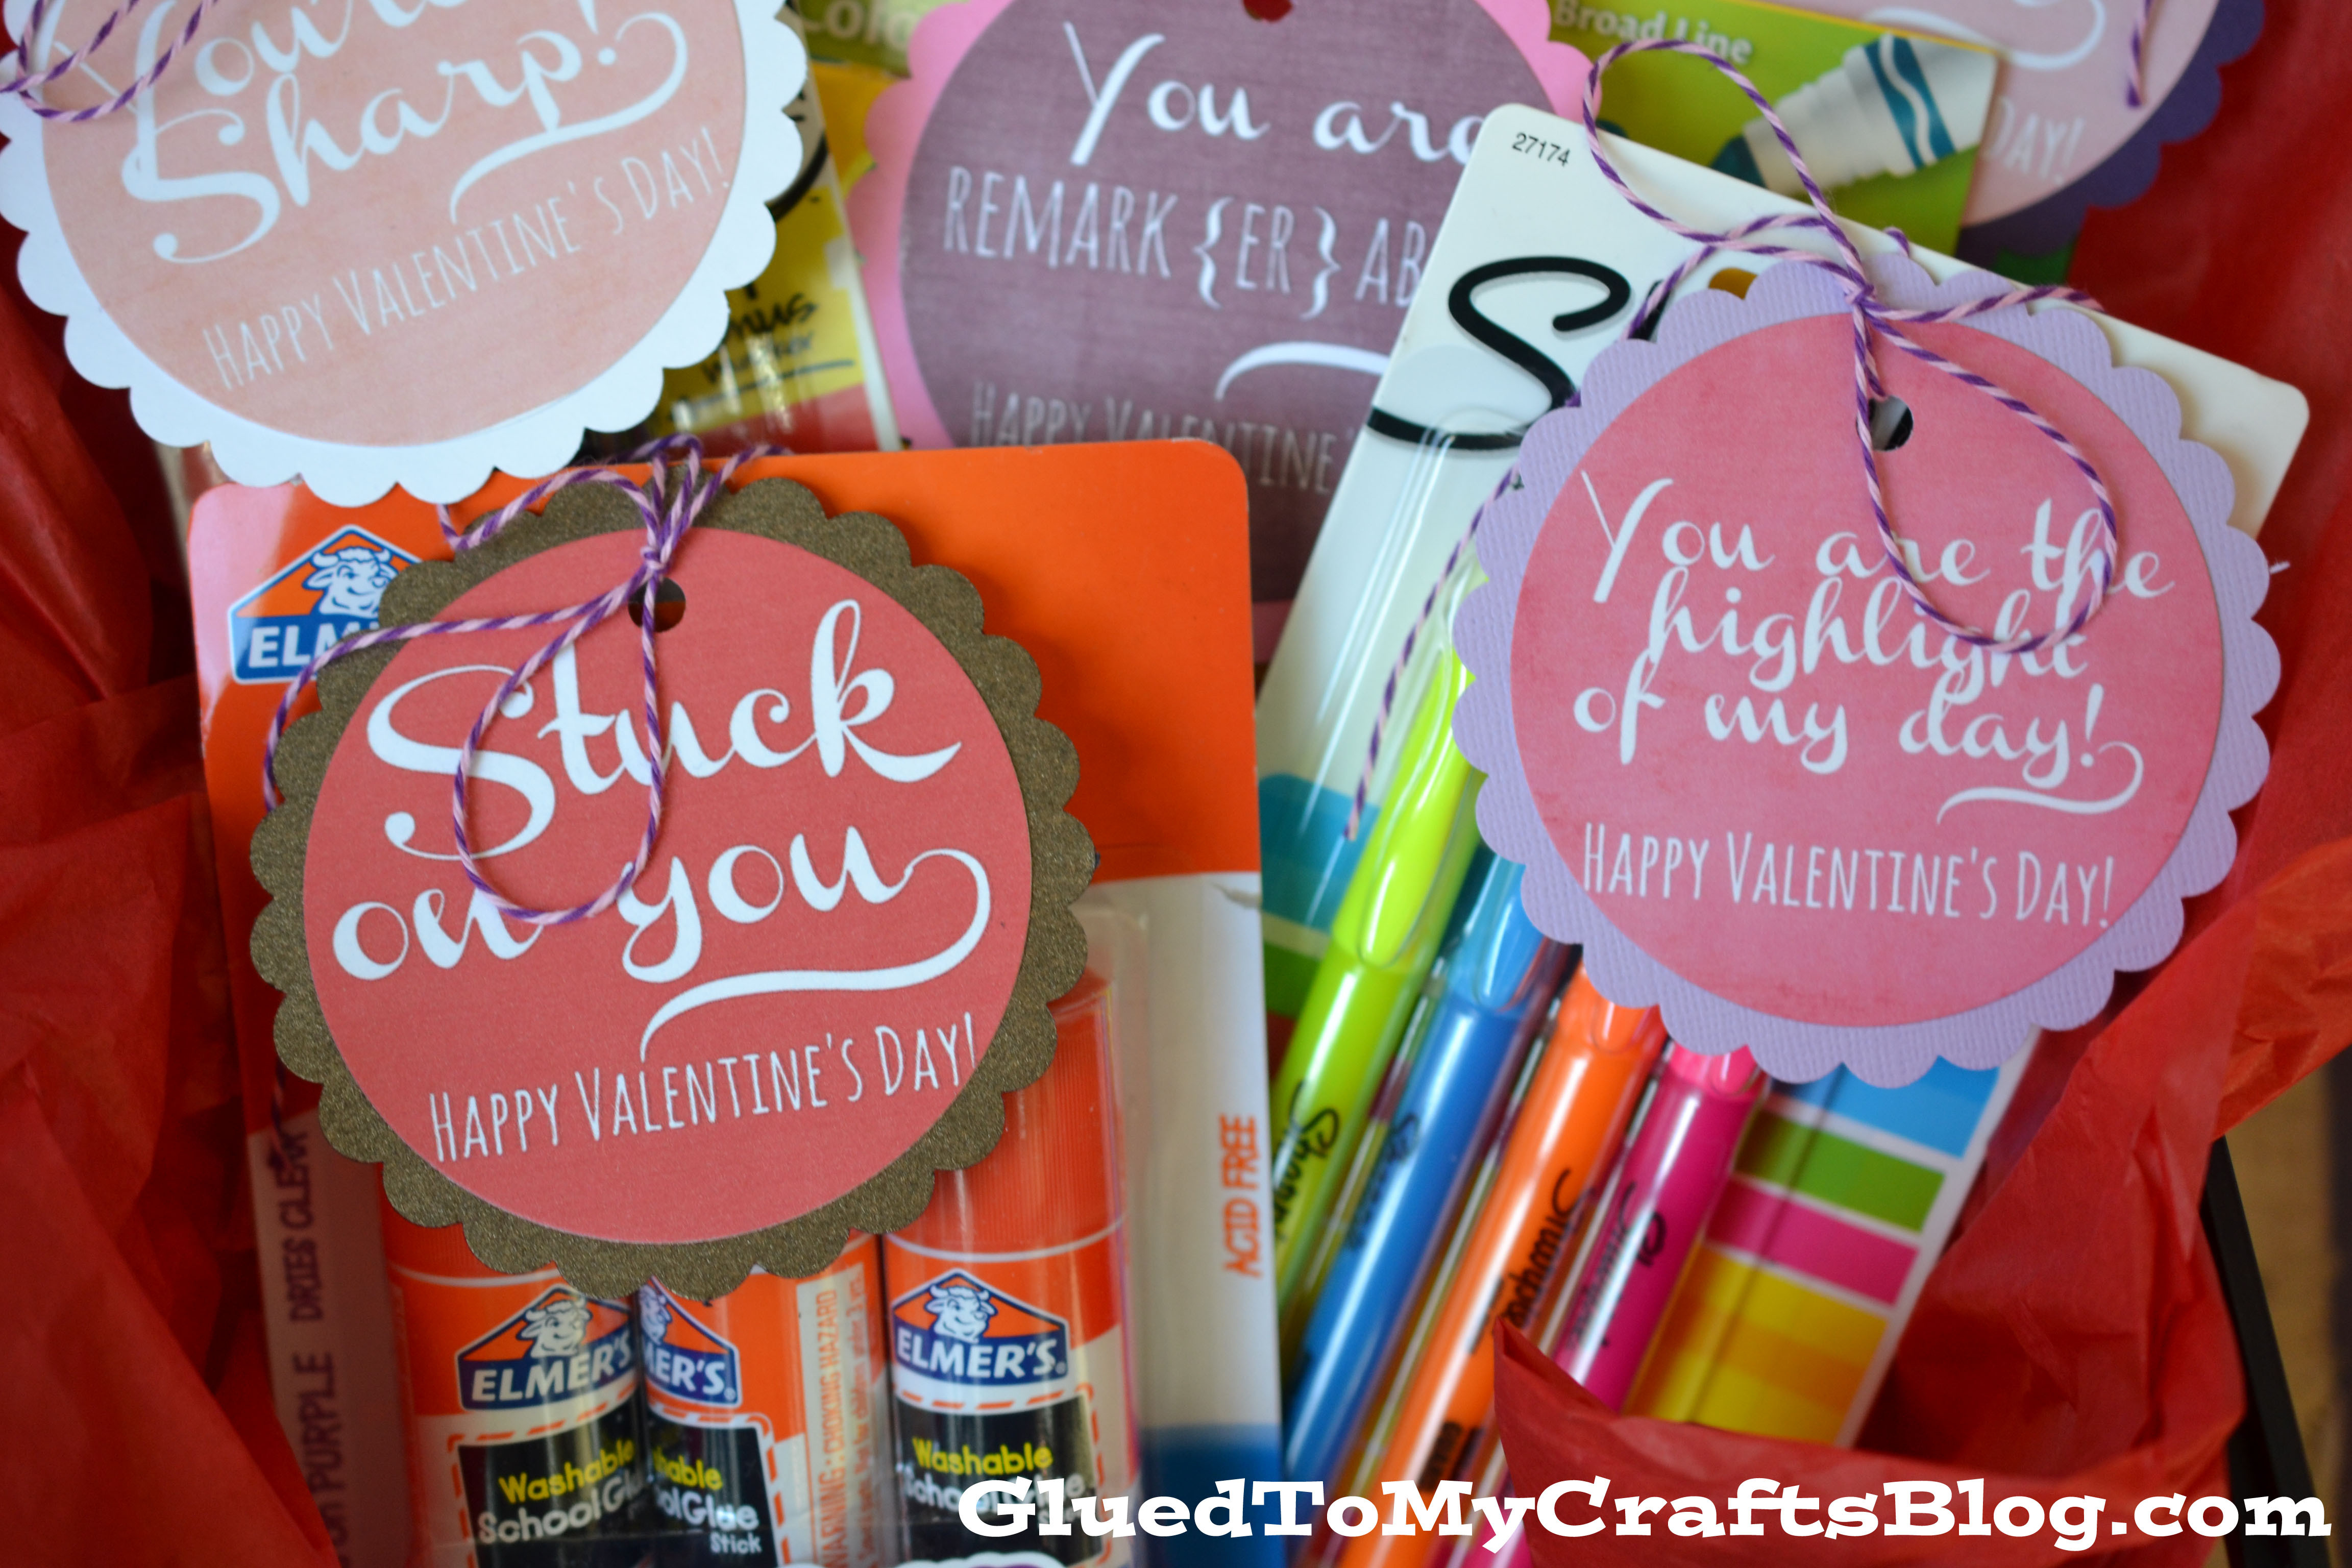 Best ideas about Teacher Valentine Gift Ideas
. Save or Pin Valentine Teacher Gift Idea Free Printable Now.